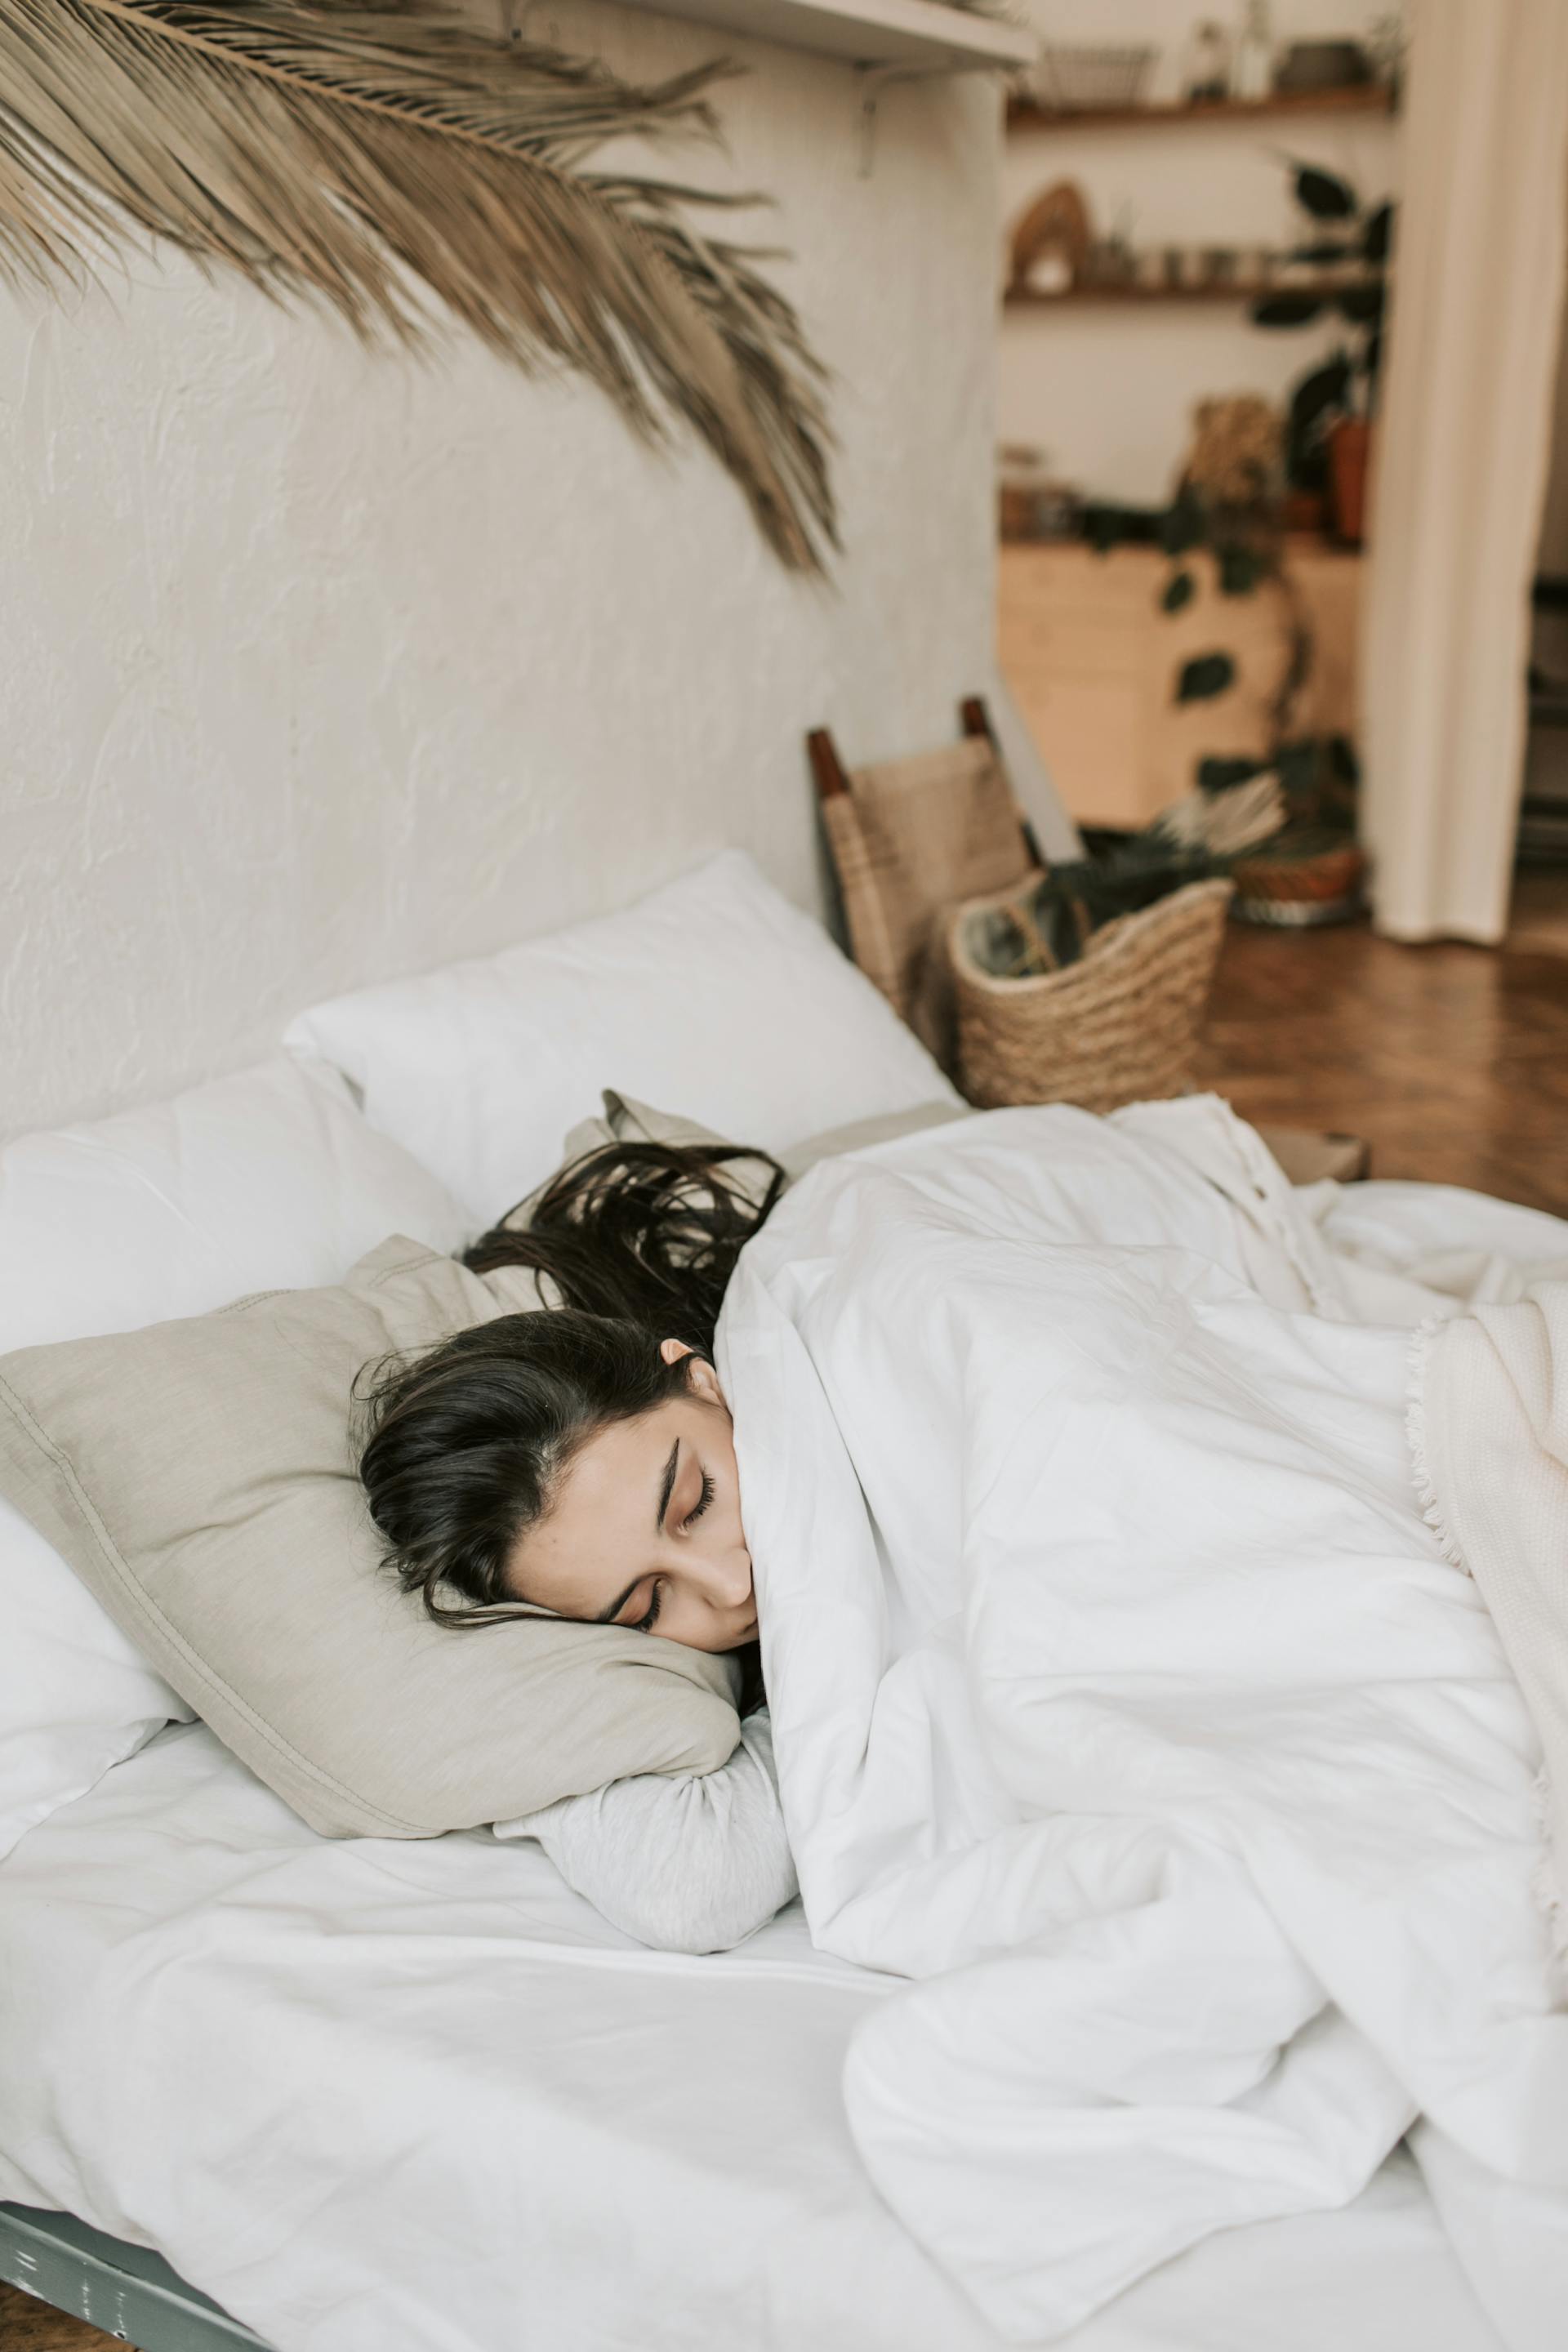 Una mujer durmiendo en la cama | Fuente: Pexels